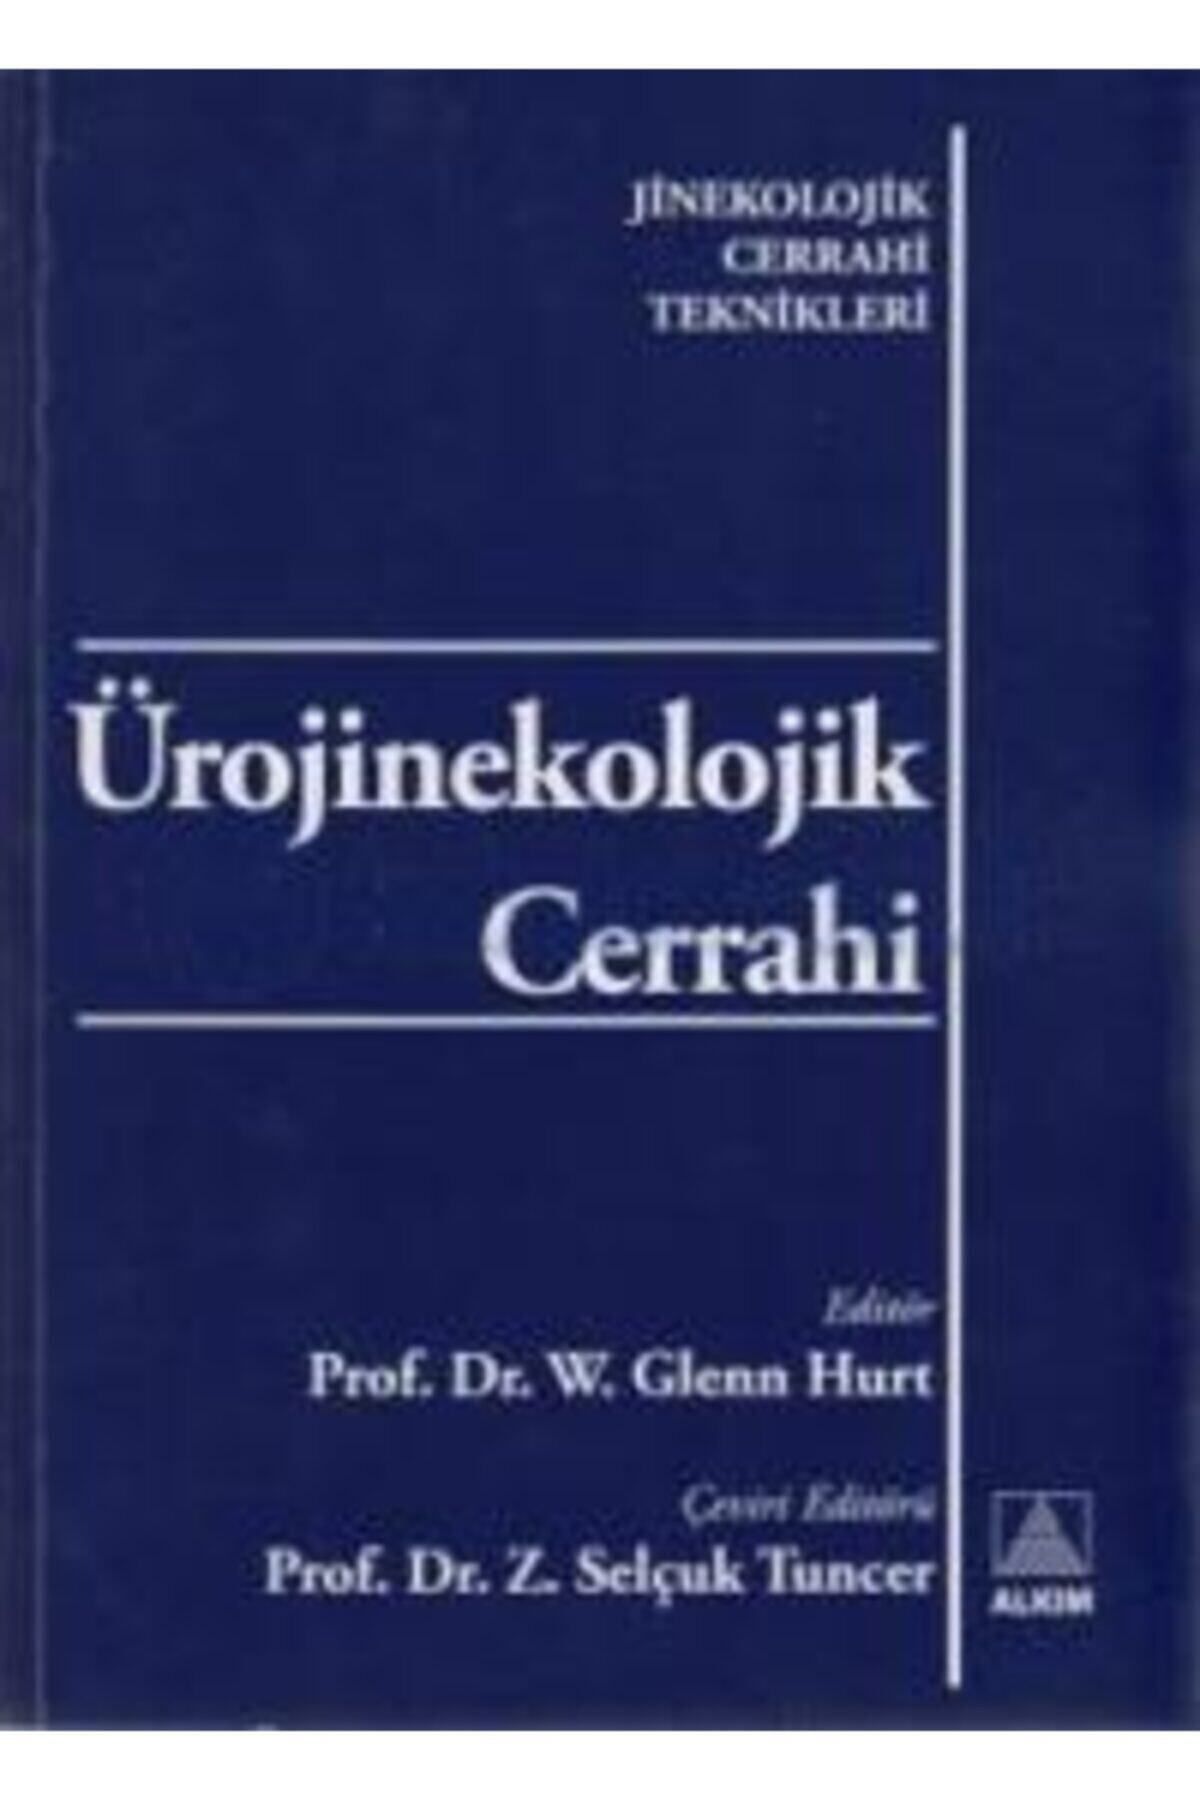 Pelikan Yayınları Ürojinekolojik Cerrahi - Jinekolojik Cerrahi Teknikleri